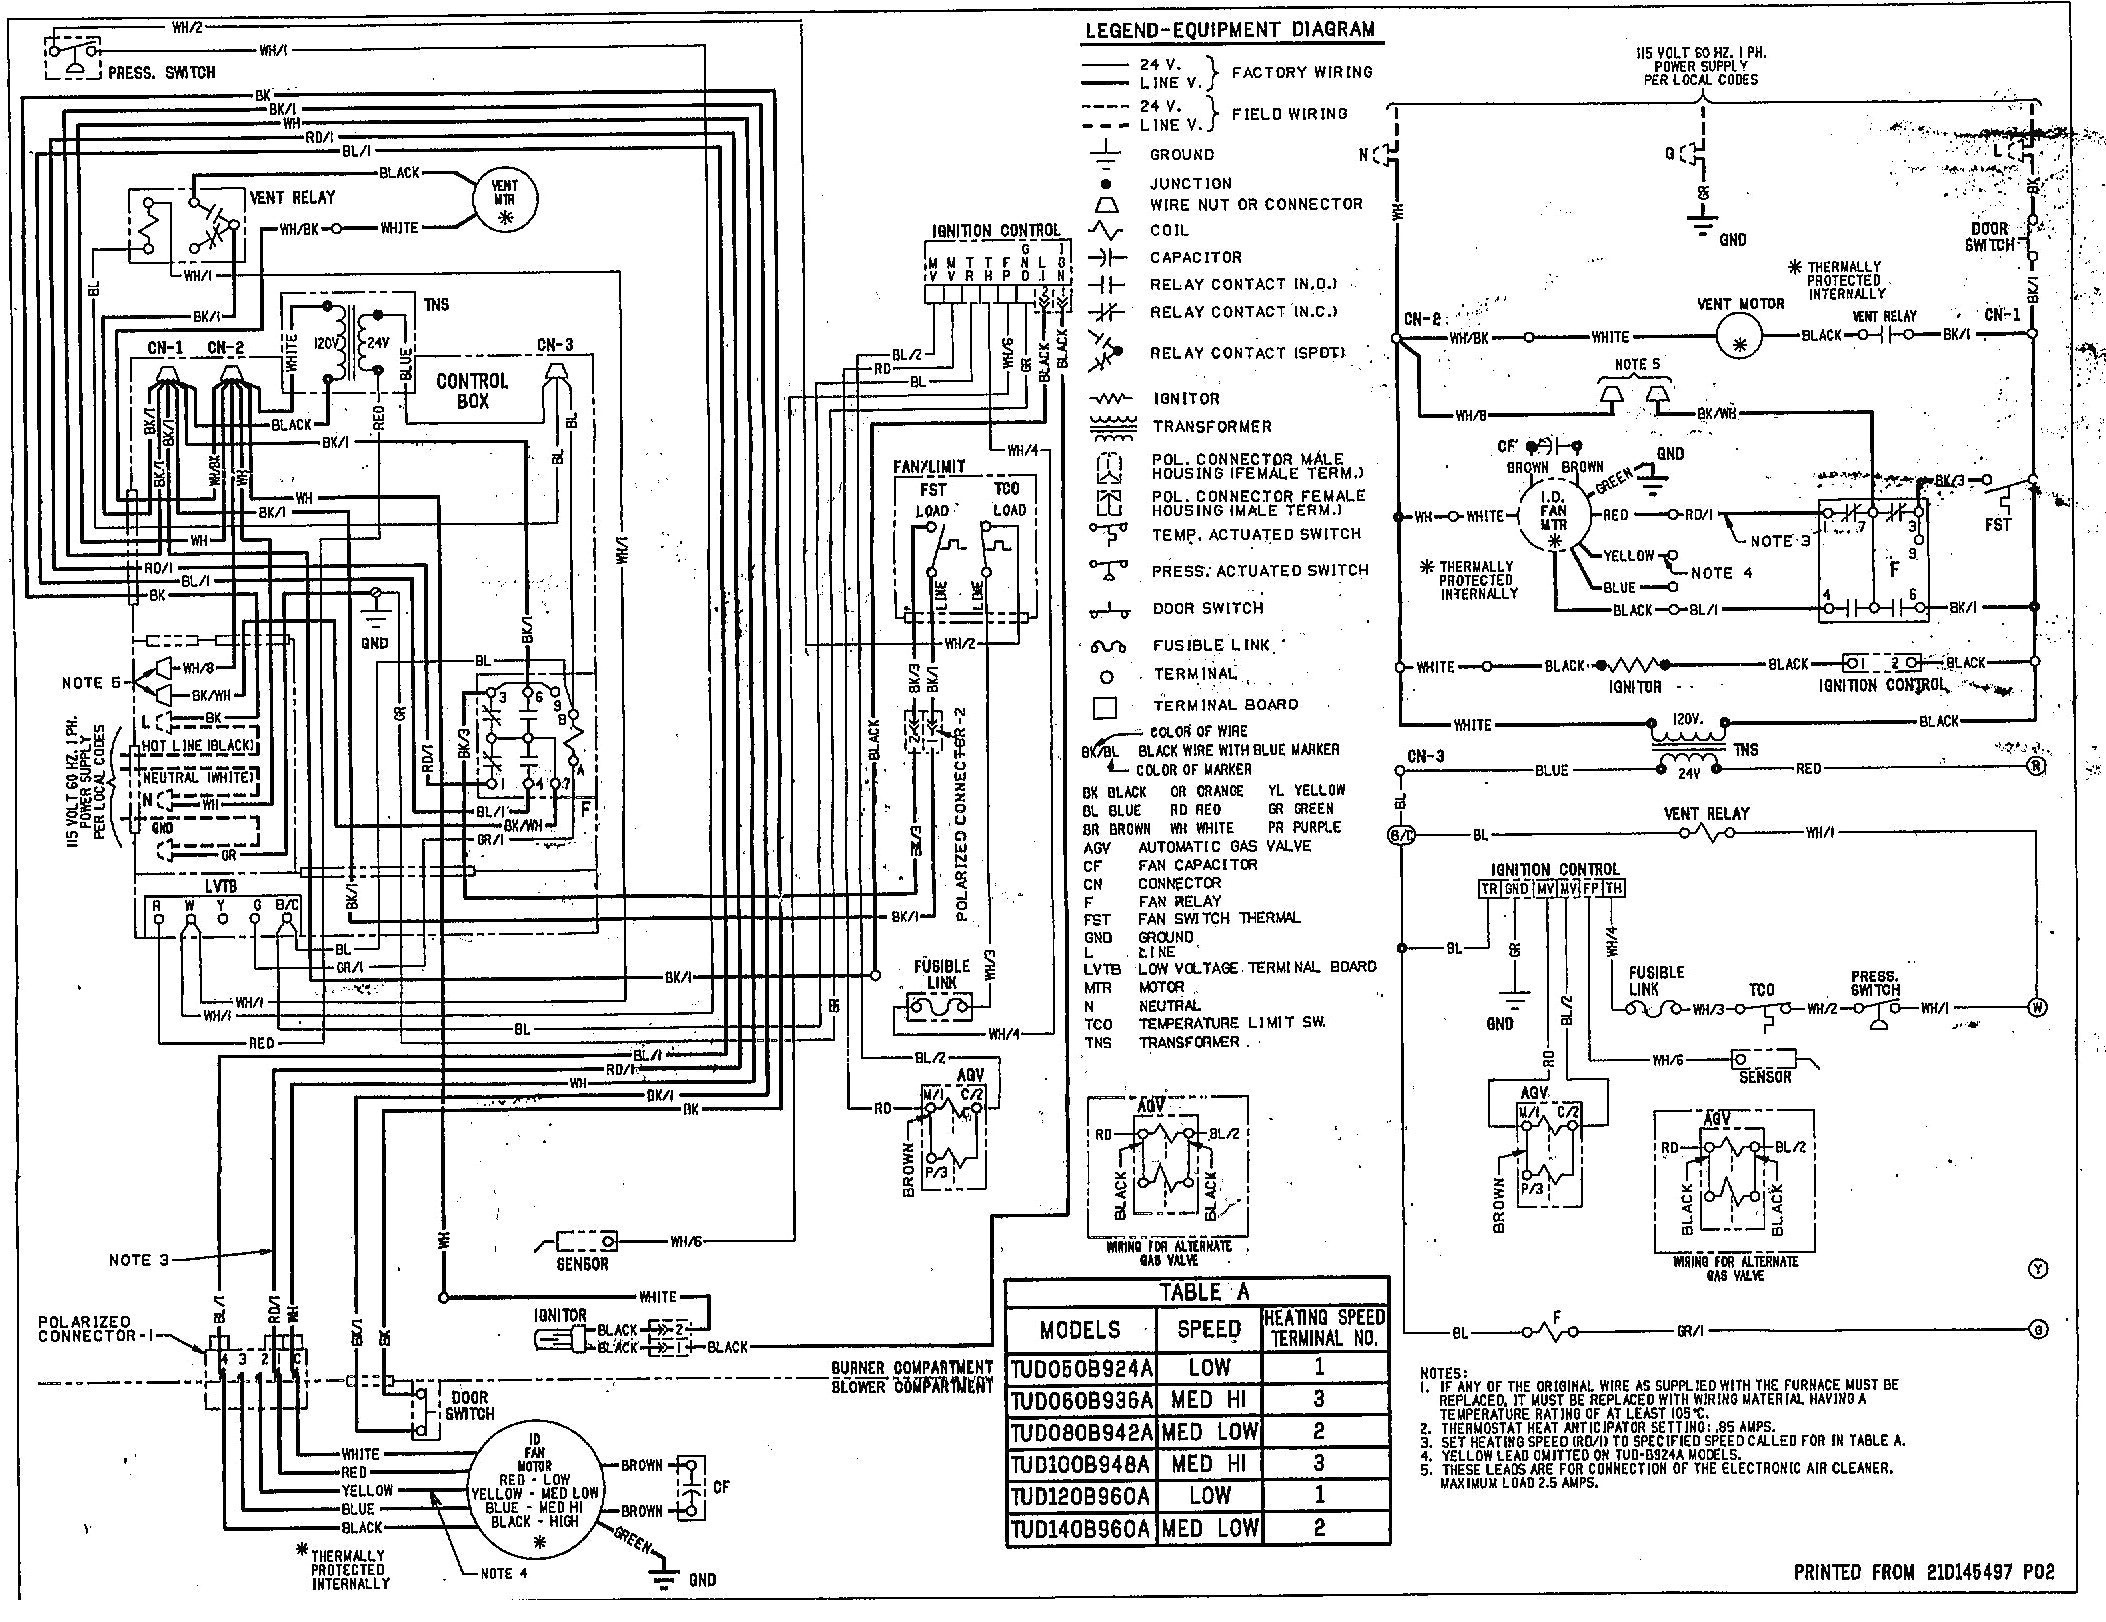 Goodman Furnace Wiring Diagram Free Downloads Electric Heat Strip Wiring Diagram Elegant Goodman Furnace